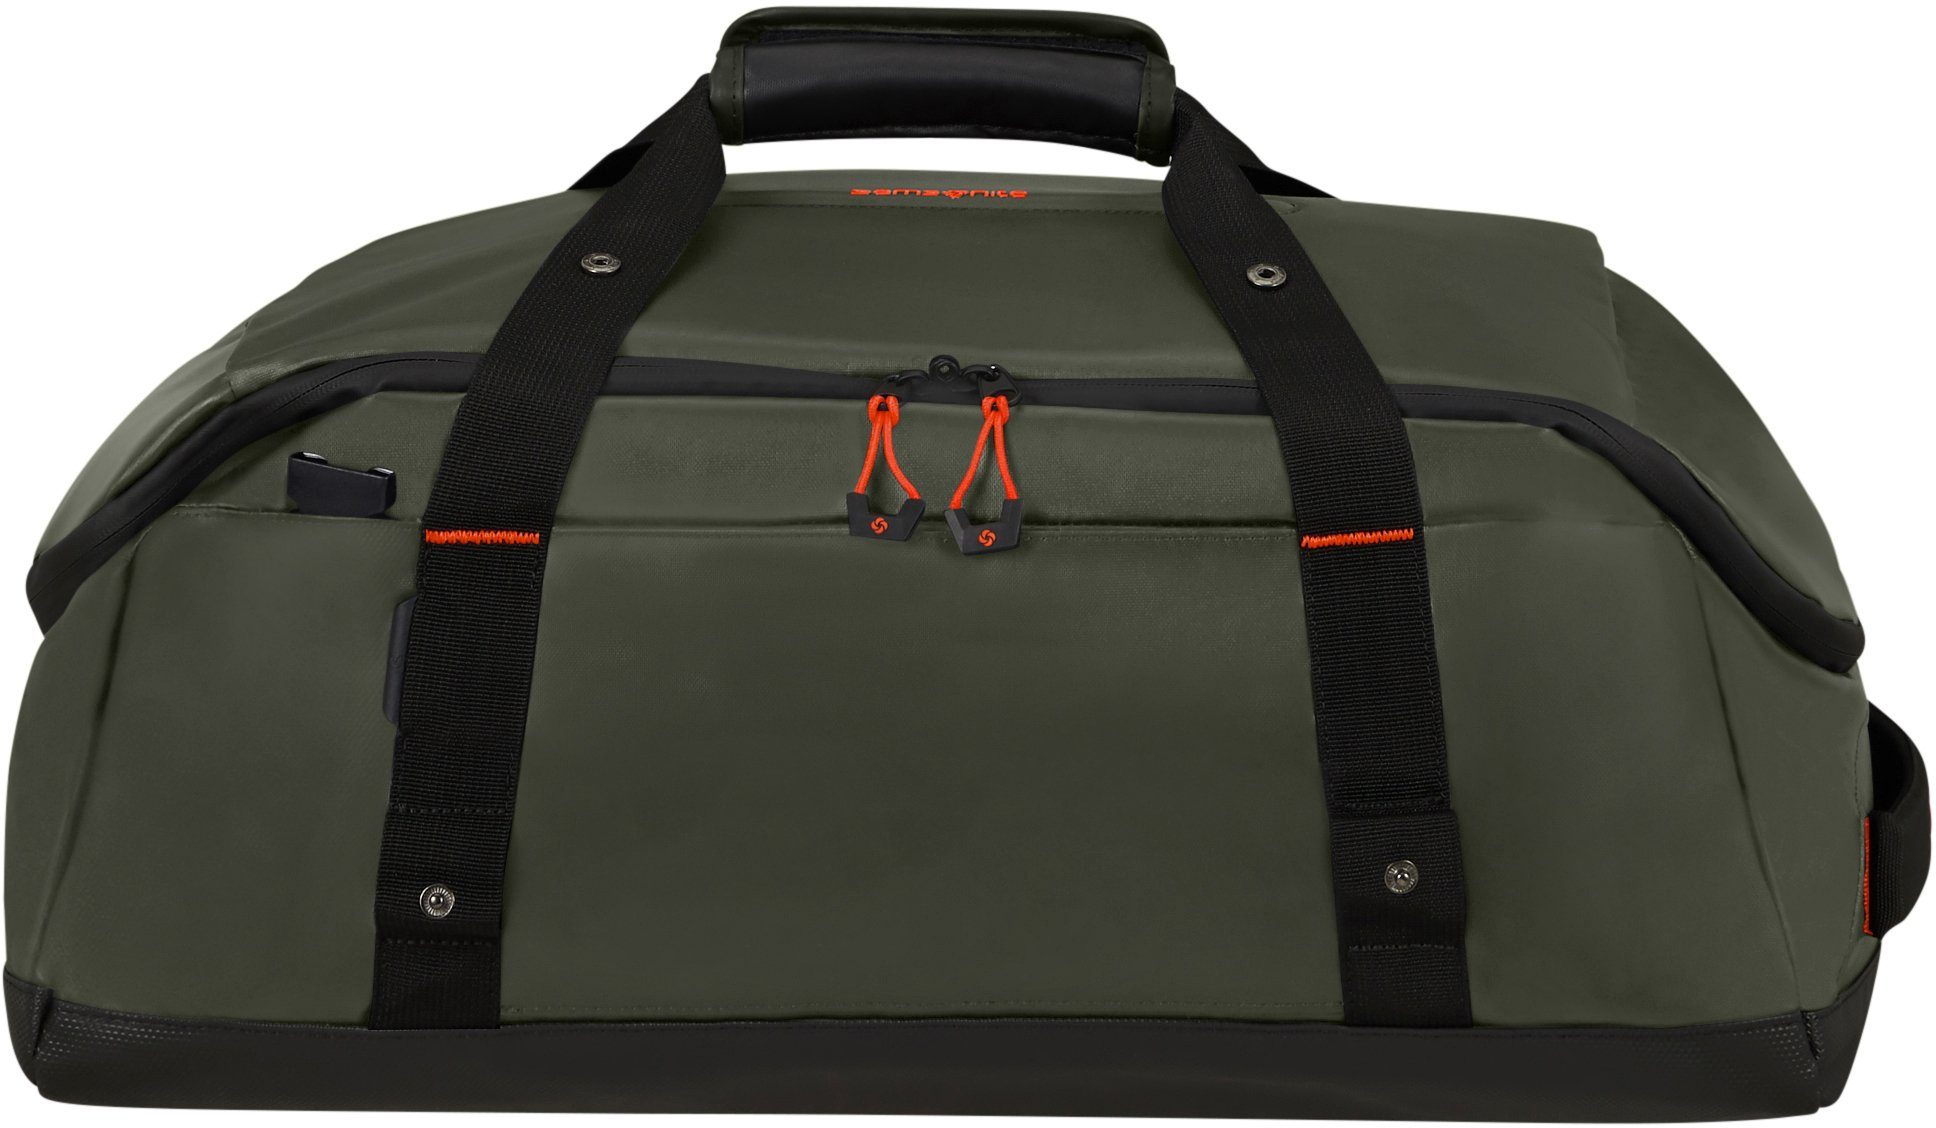 Samsonite Reisetasche Ecodiver, 40 l, Handgepäck mit Rucksackfunktion; teilweise aus recyceltem Material